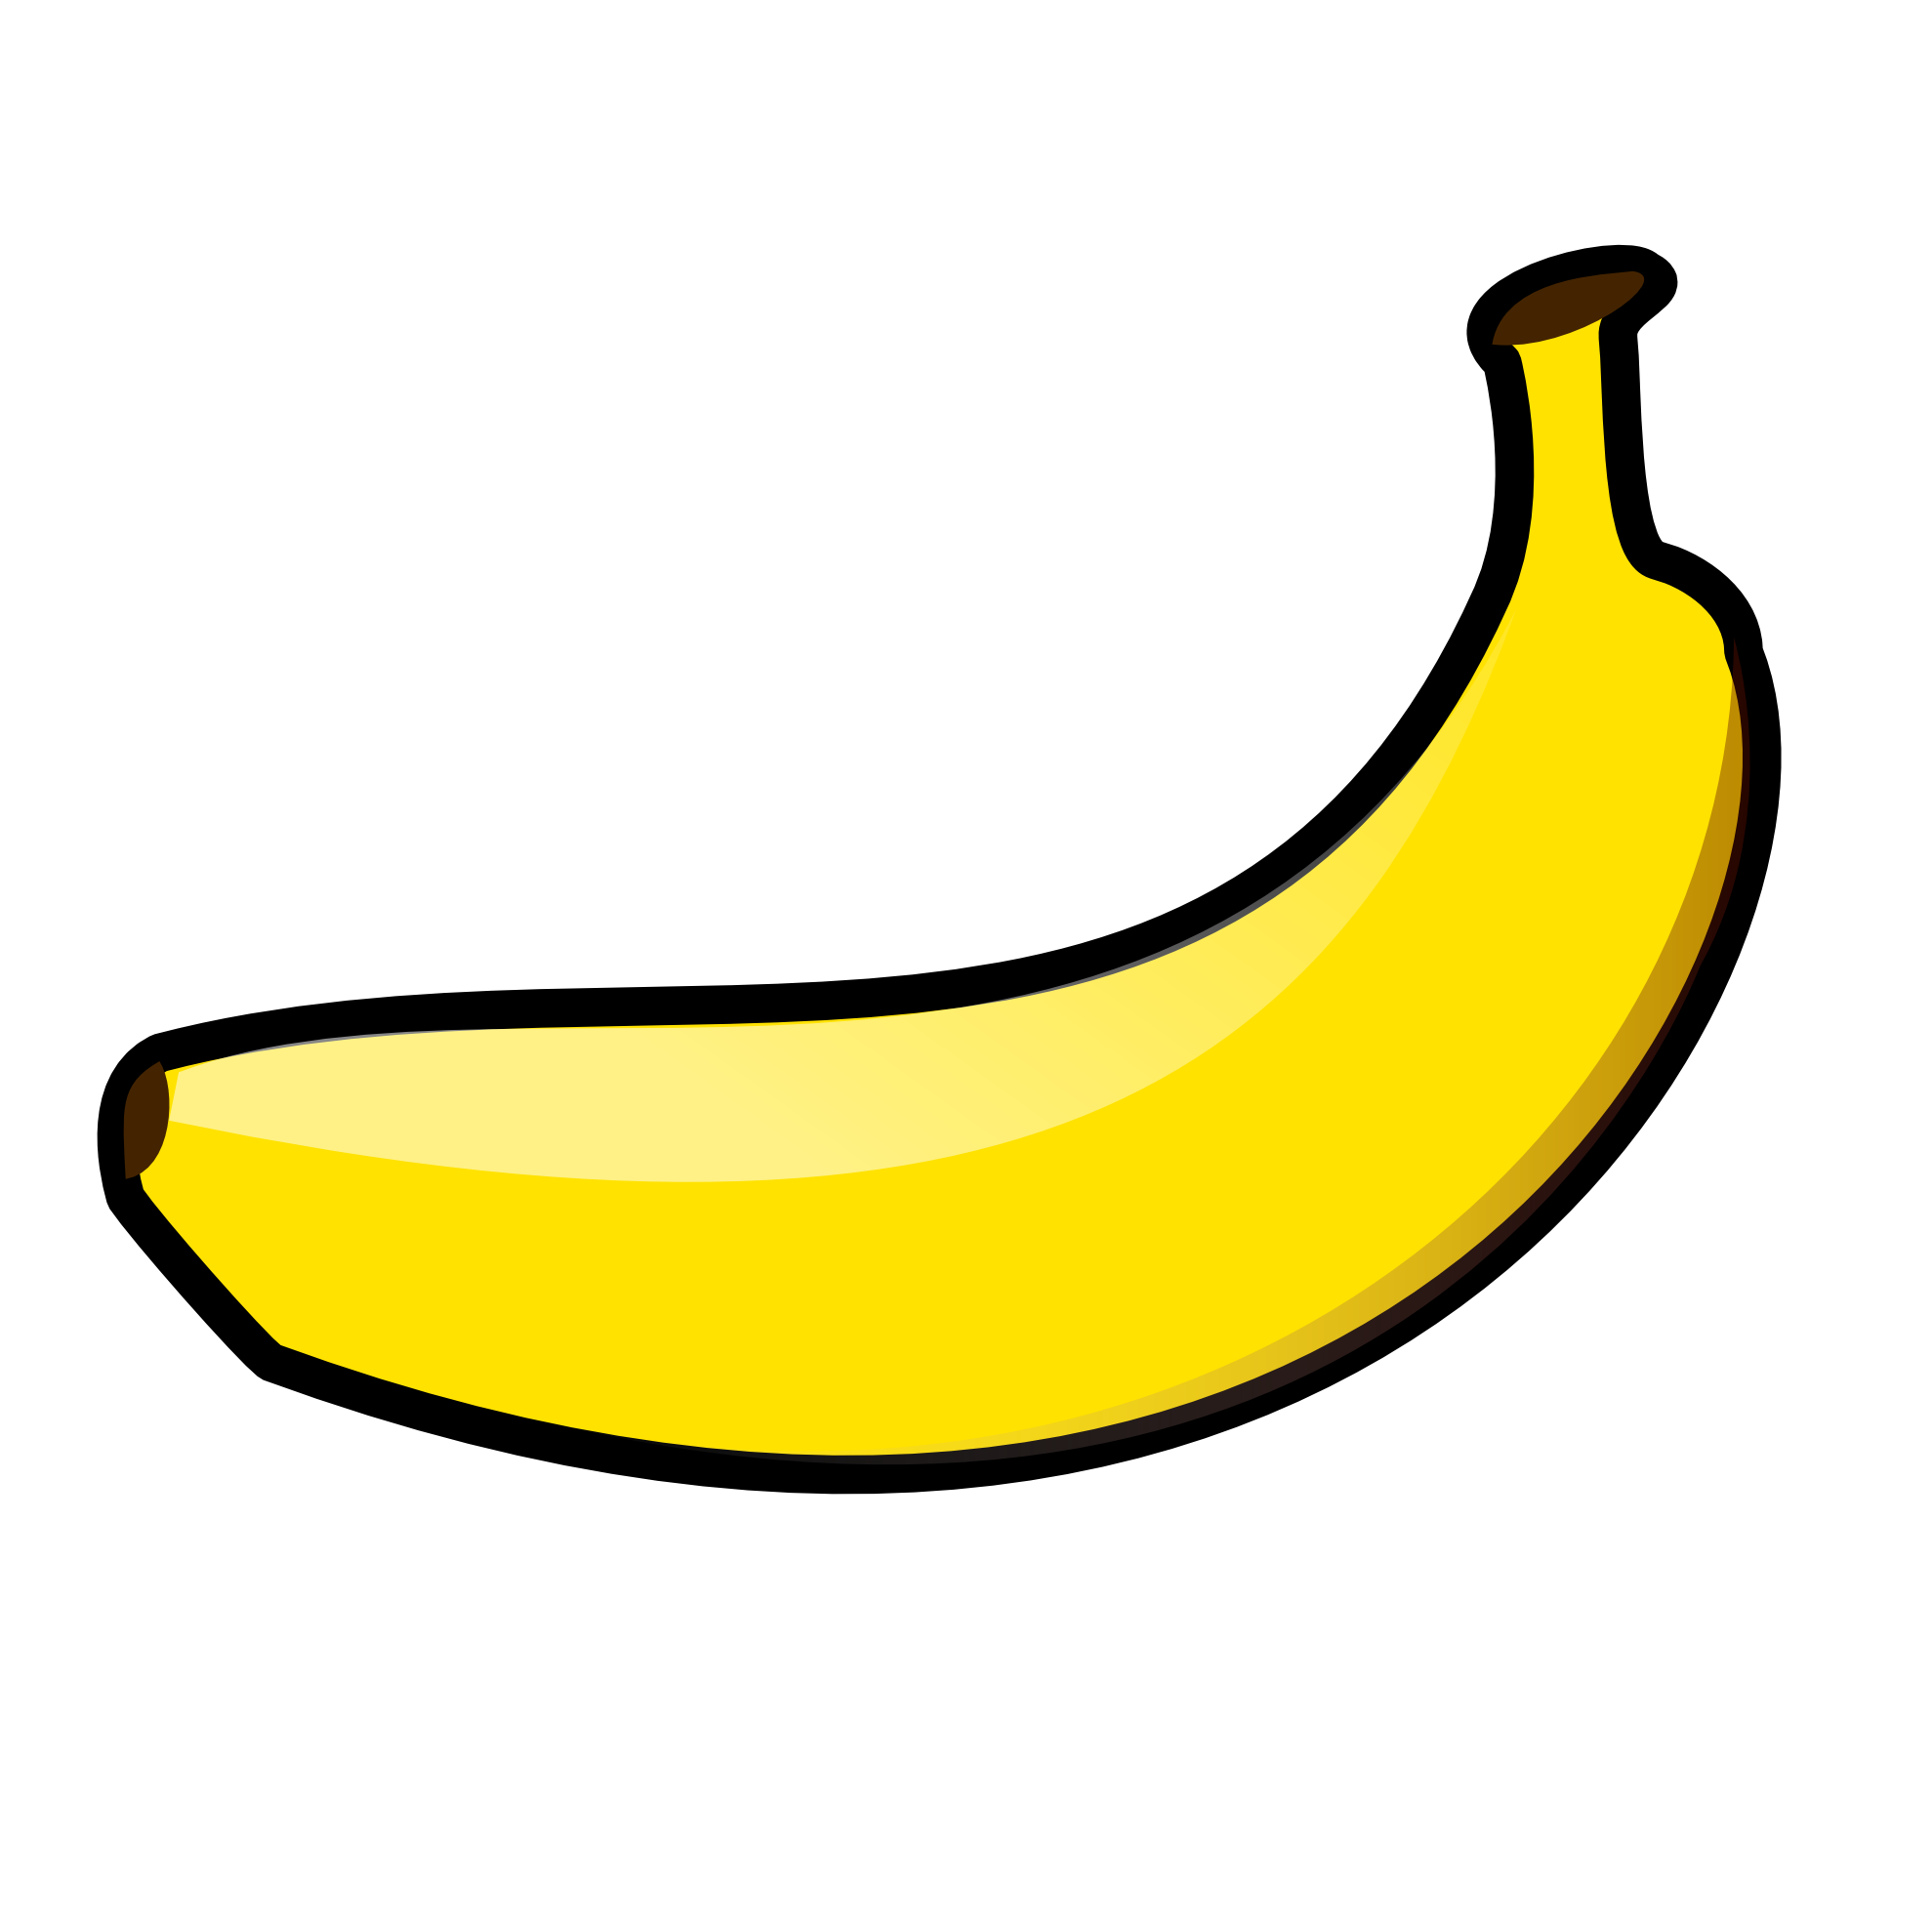 banana-family # 82062